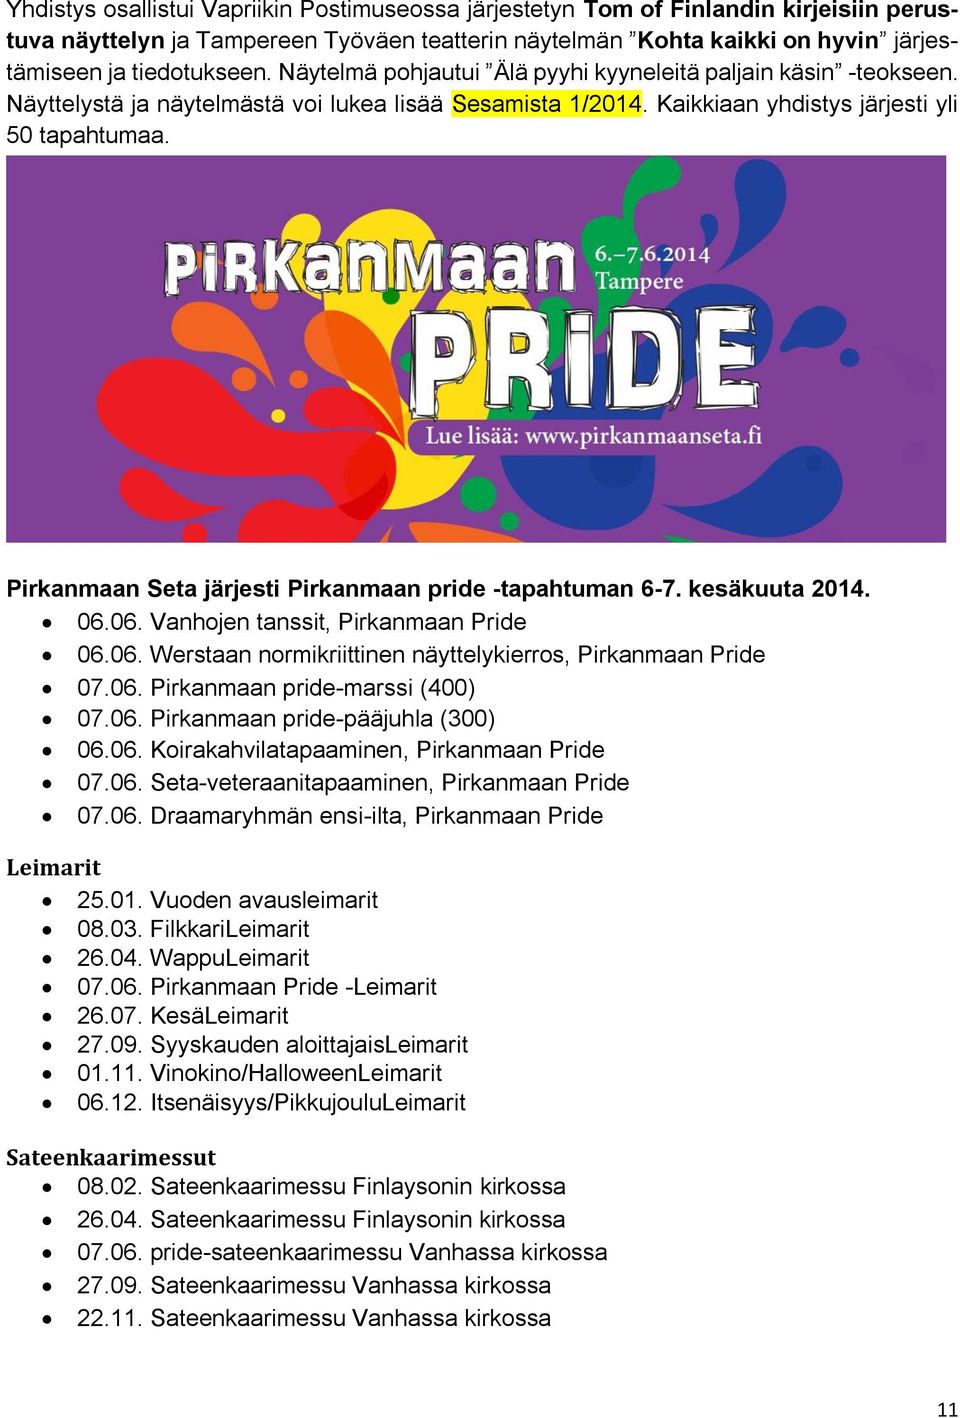 Pirkanmaan Seta järjesti Pirkanmaan pride -tapahtuman 6-7. kesäkuuta 2014. 06.06. Vanhojen tanssit, Pirkanmaan Pride 06.06. Werstaan normikriittinen näyttelykierros, Pirkanmaan Pride 07.06. Pirkanmaan pride-marssi (400) 07.